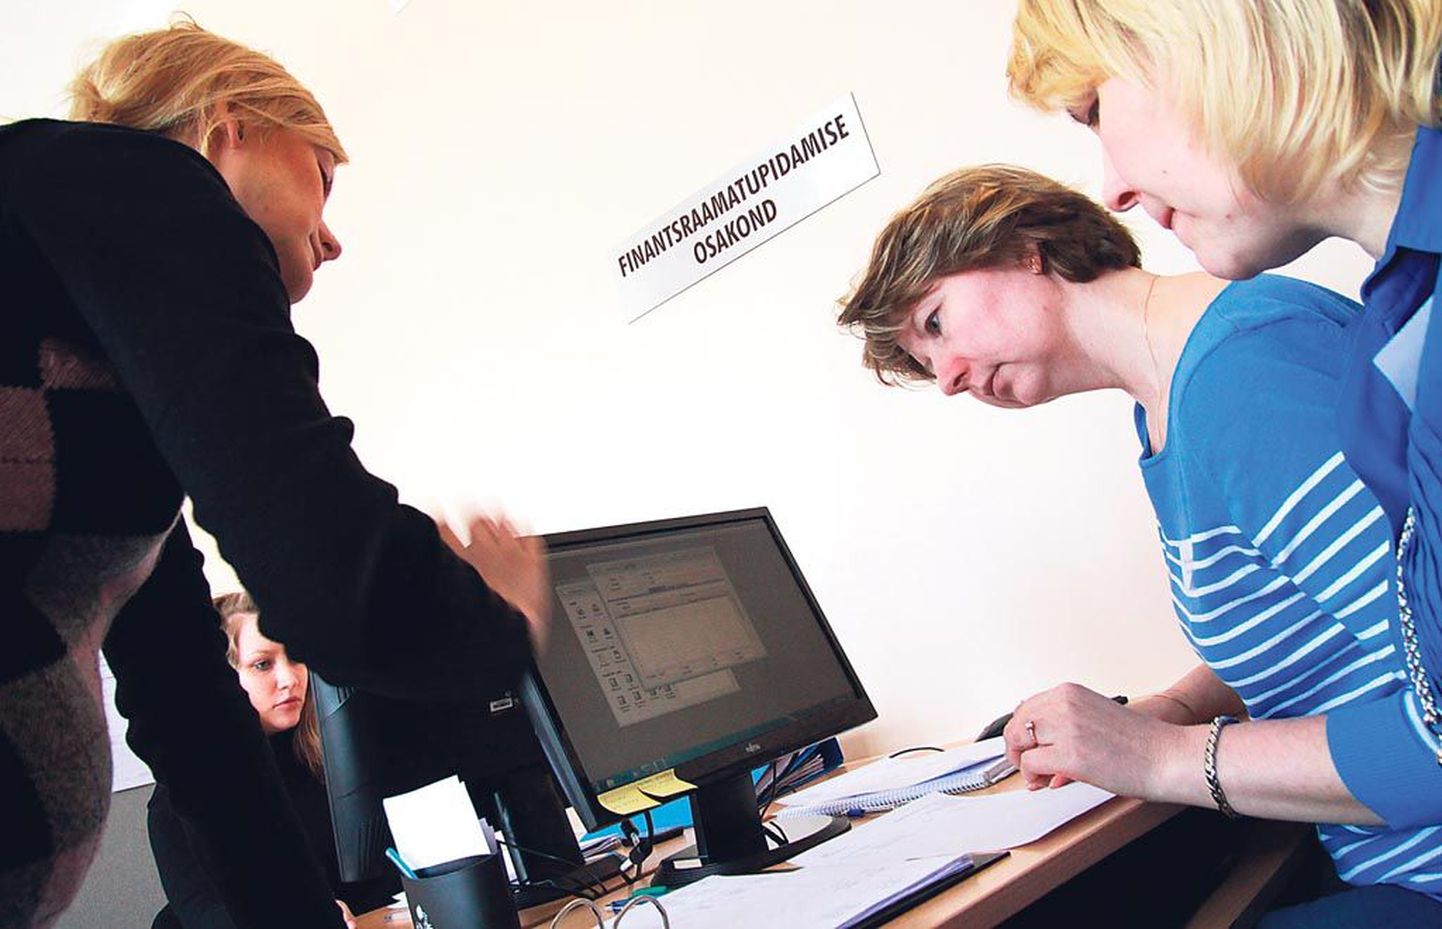 Pärnu Saksa tehnoloogiakooli majandusarvestuse eriala õpilased Heili Šurõgin (vasakul), Murel Jaaniste ja Lili Jürissoo on tööl harjutusfirma finantsraamatupidamise osakonnas.